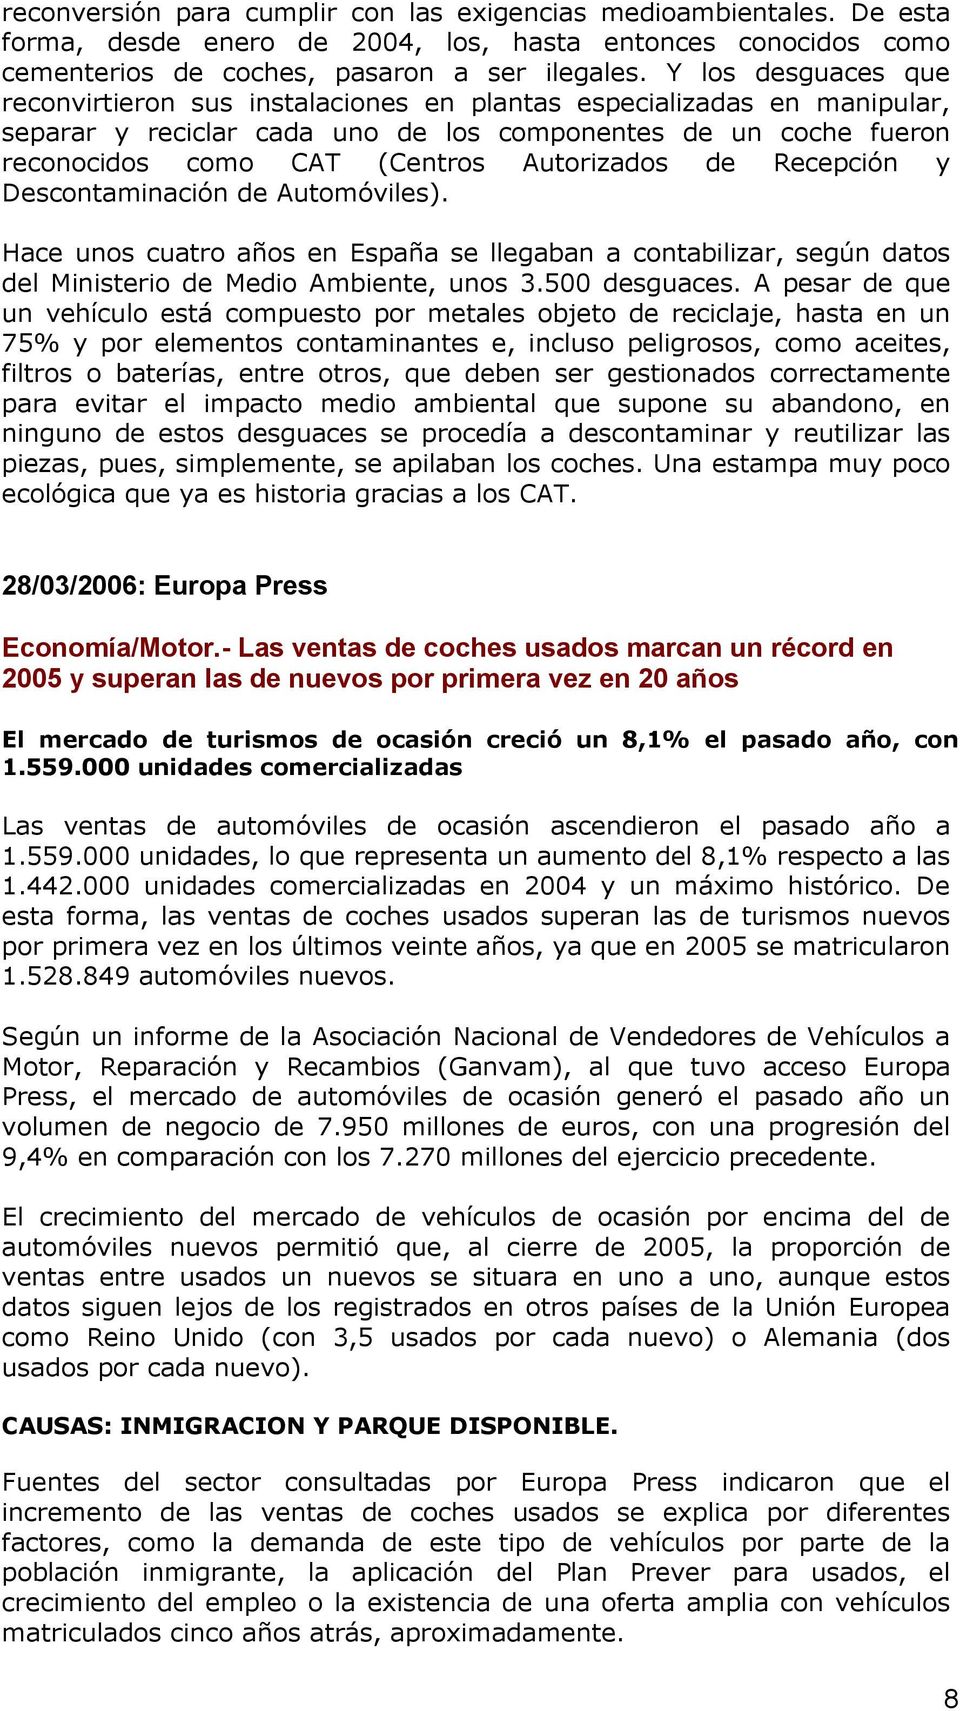 Autorizados de Recepción y Descontaminación de Automóviles). Hace unos cuatro años en España se llegaban a contabilizar, según datos del Ministerio de Medio Ambiente, unos 3.500 desguaces.